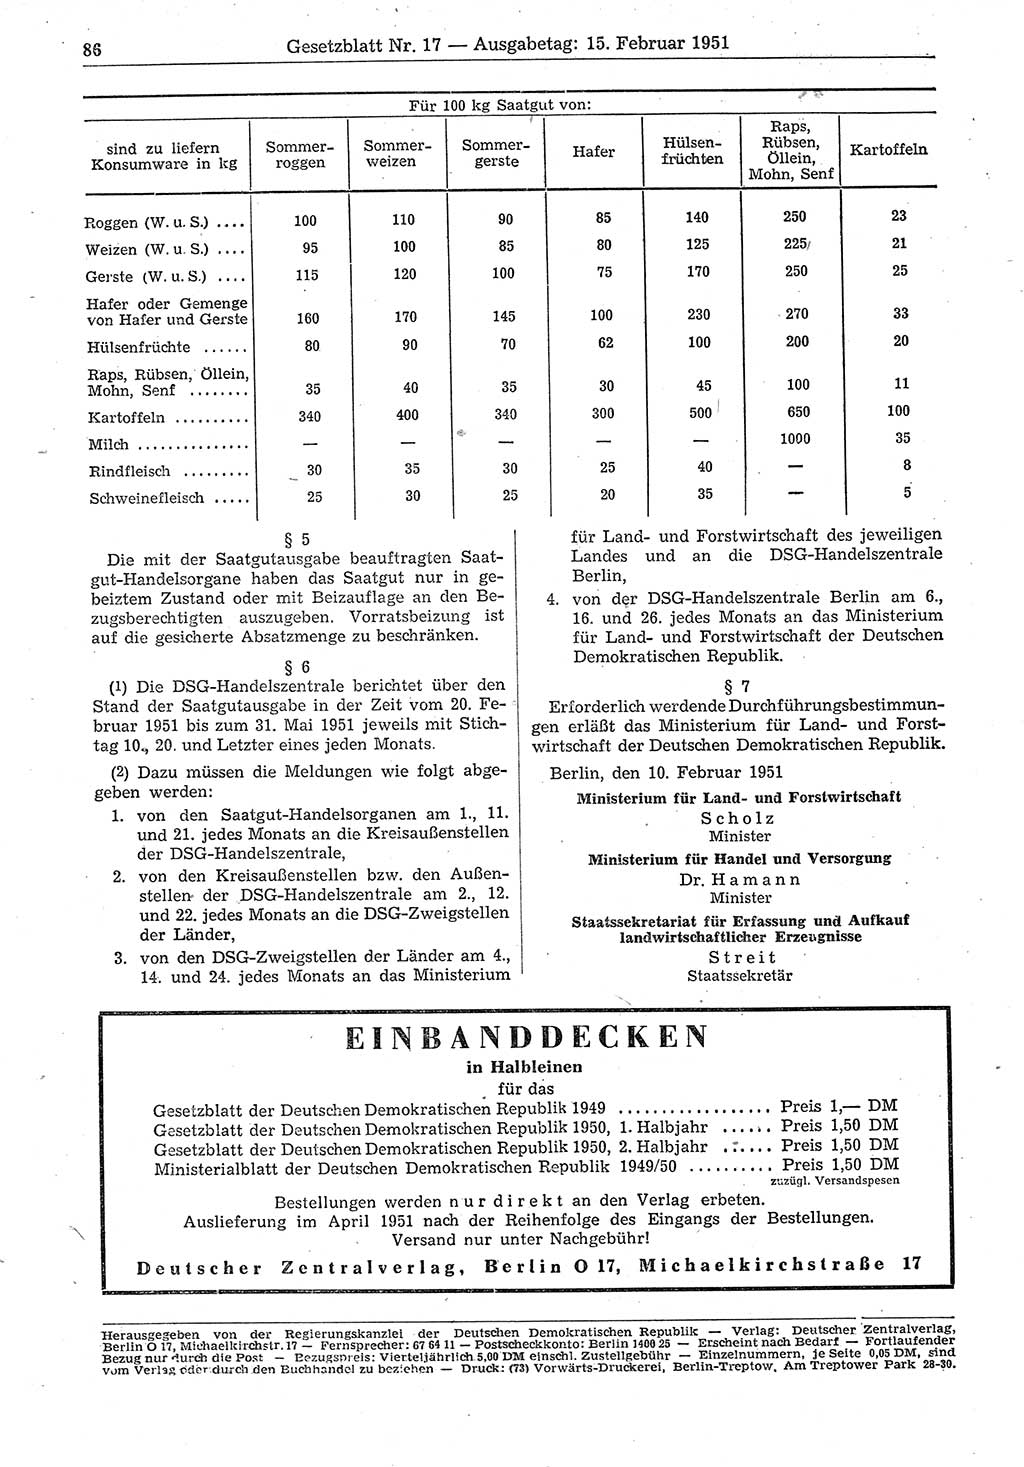 Gesetzblatt (GBl.) der Deutschen Demokratischen Republik (DDR) 1951, Seite 86 (GBl. DDR 1951, S. 86)